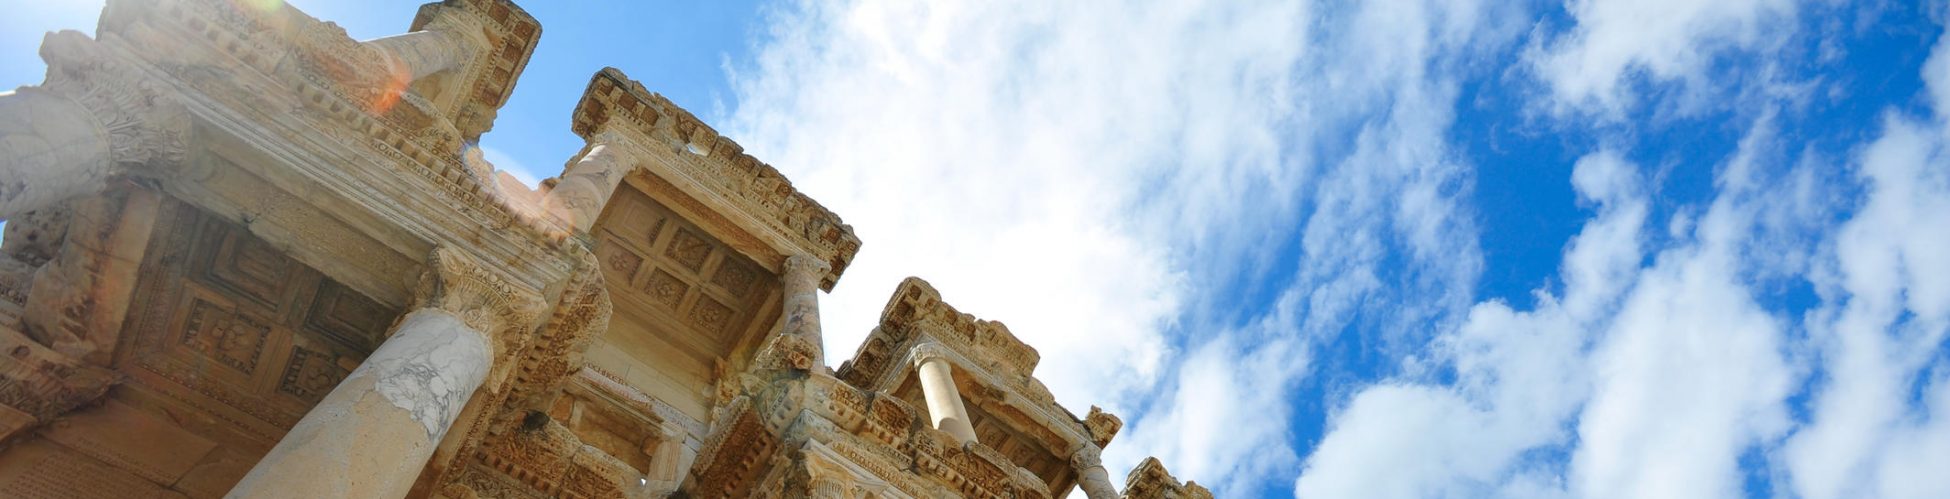 Ephesus Palace